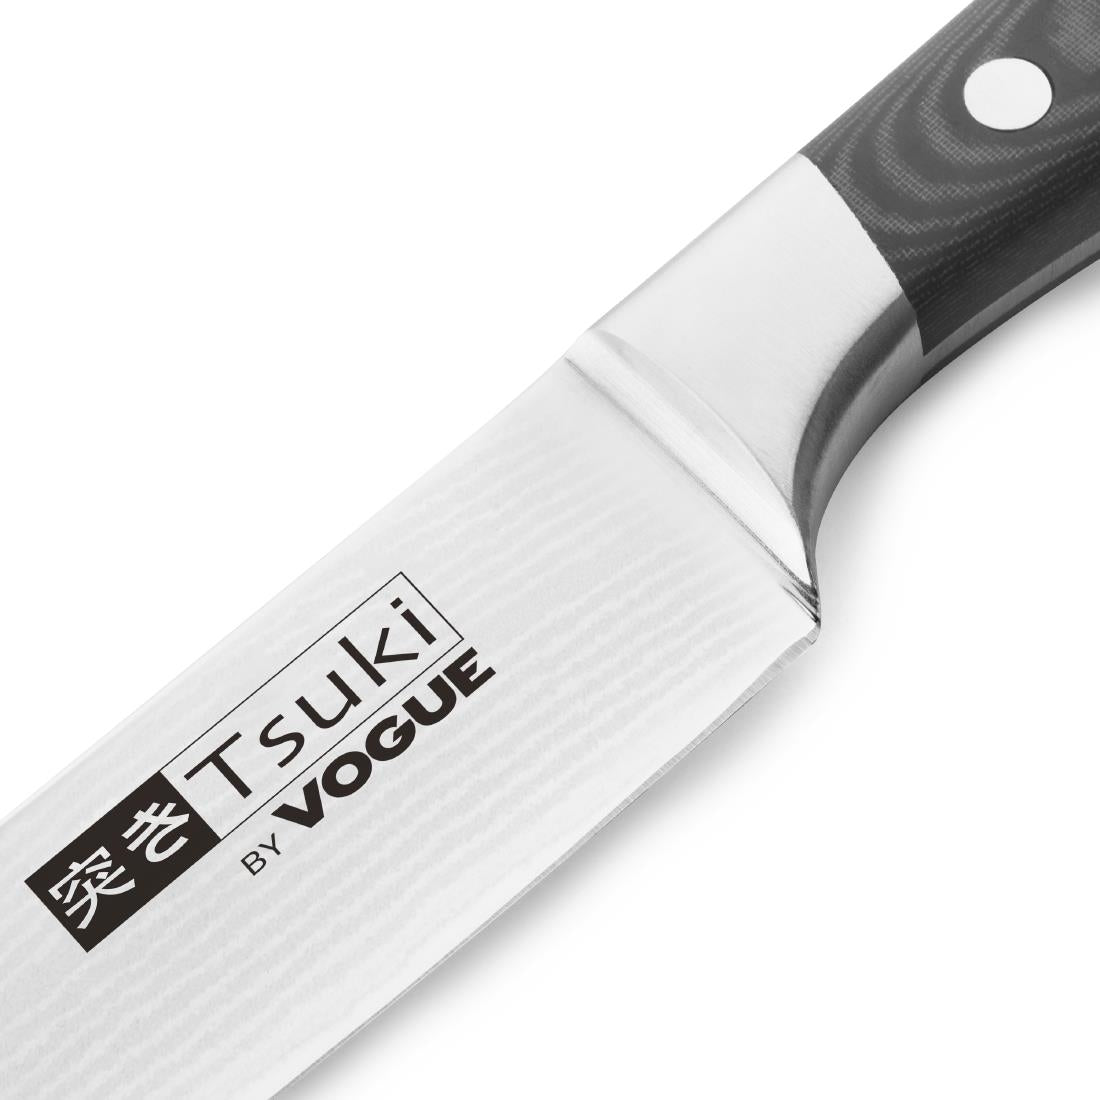 CF843 Tsuki Series 7 Carving Knife 20.5cm